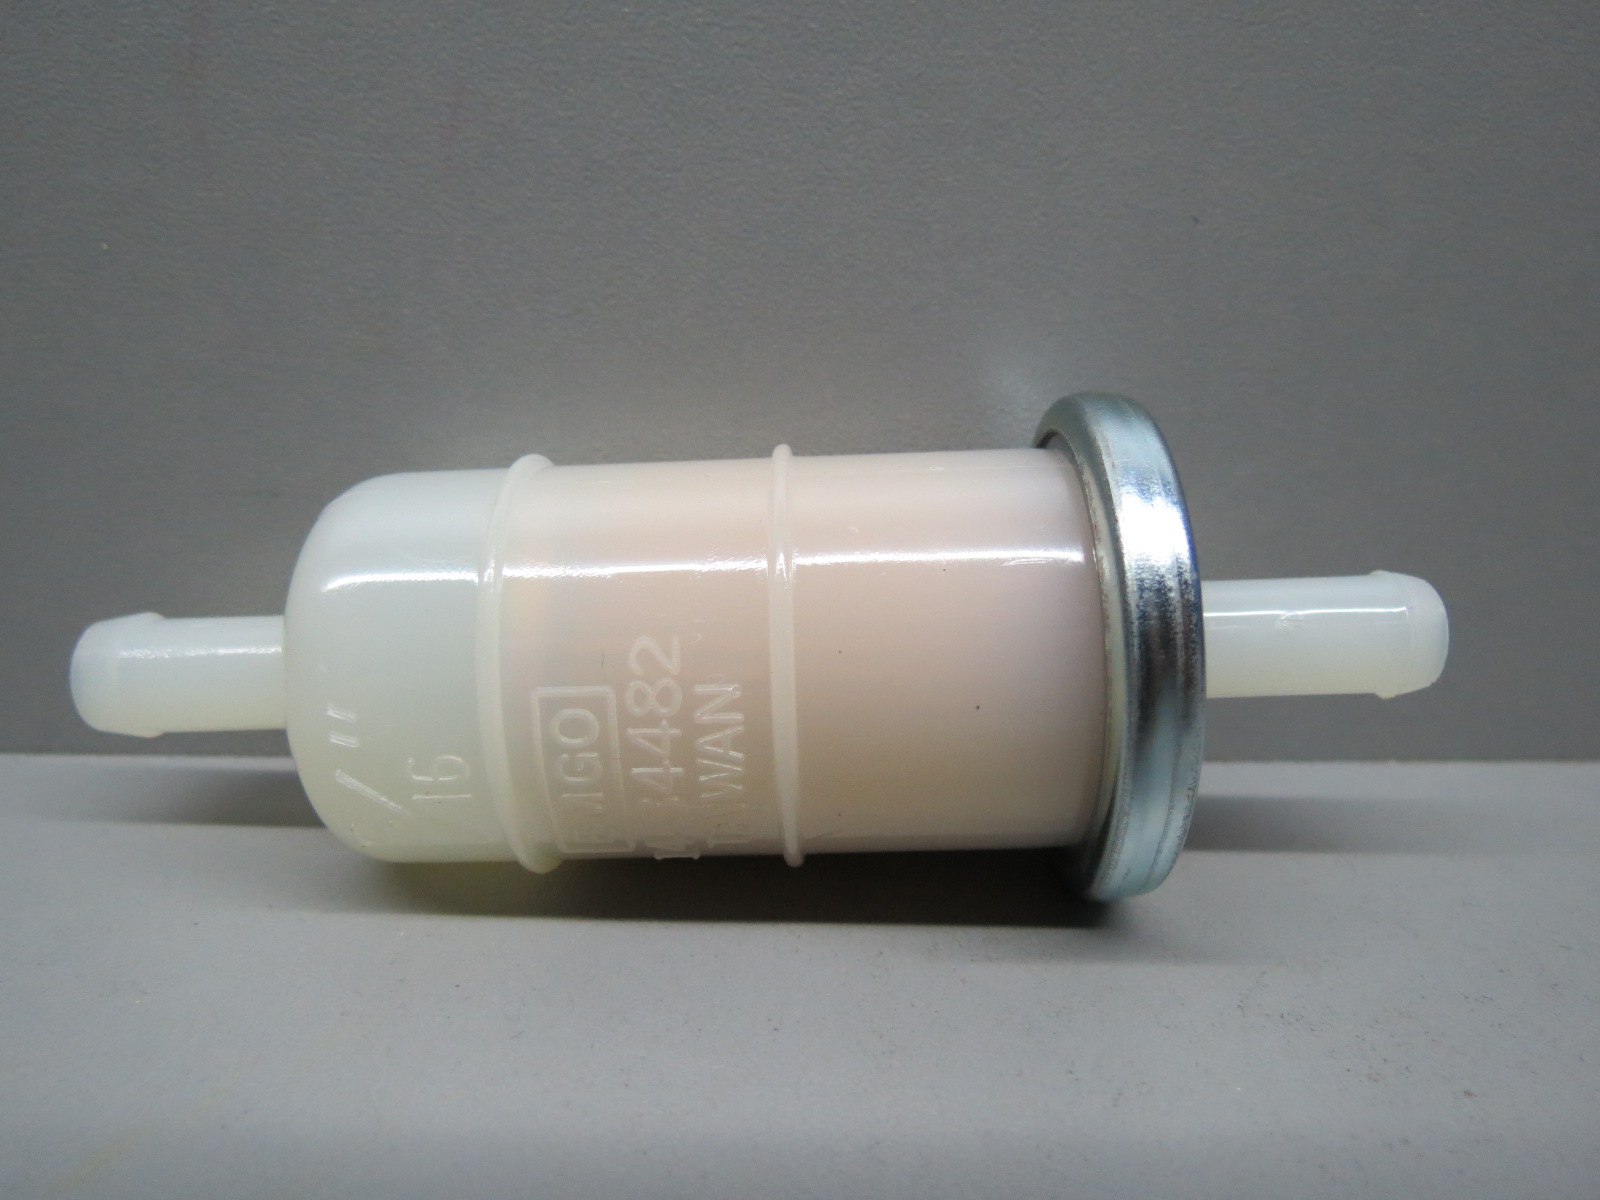 Фильтр тонкой очистки 10. Топливный фильтр Honda 16900-mg8-003 (1/4”). 1fk-24560-10-00 фильтр топливный. Топливный фильтр EMGO 10мм. Топливный фильтр 99-34482.